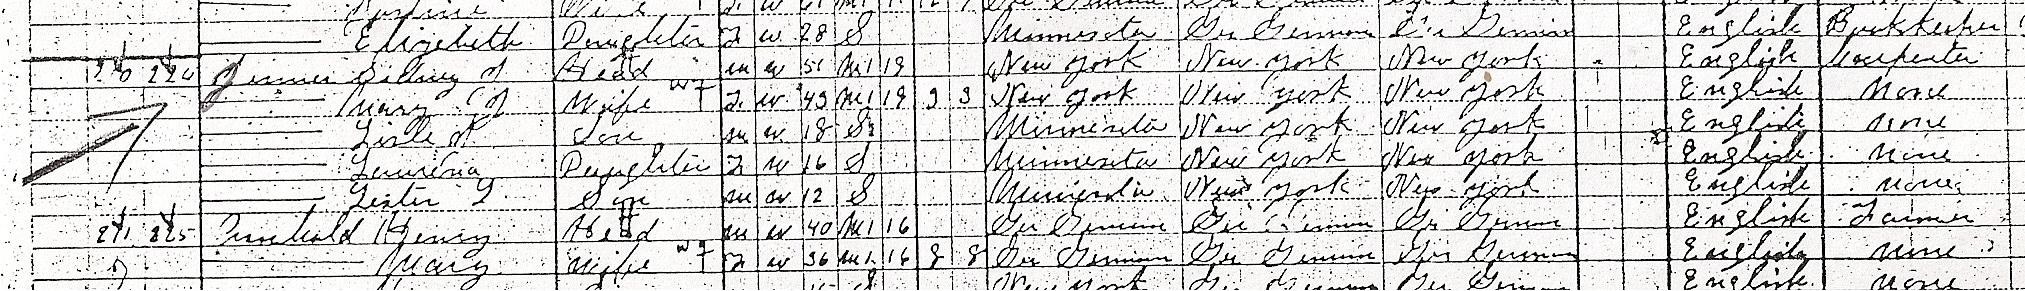 1910 census info focused